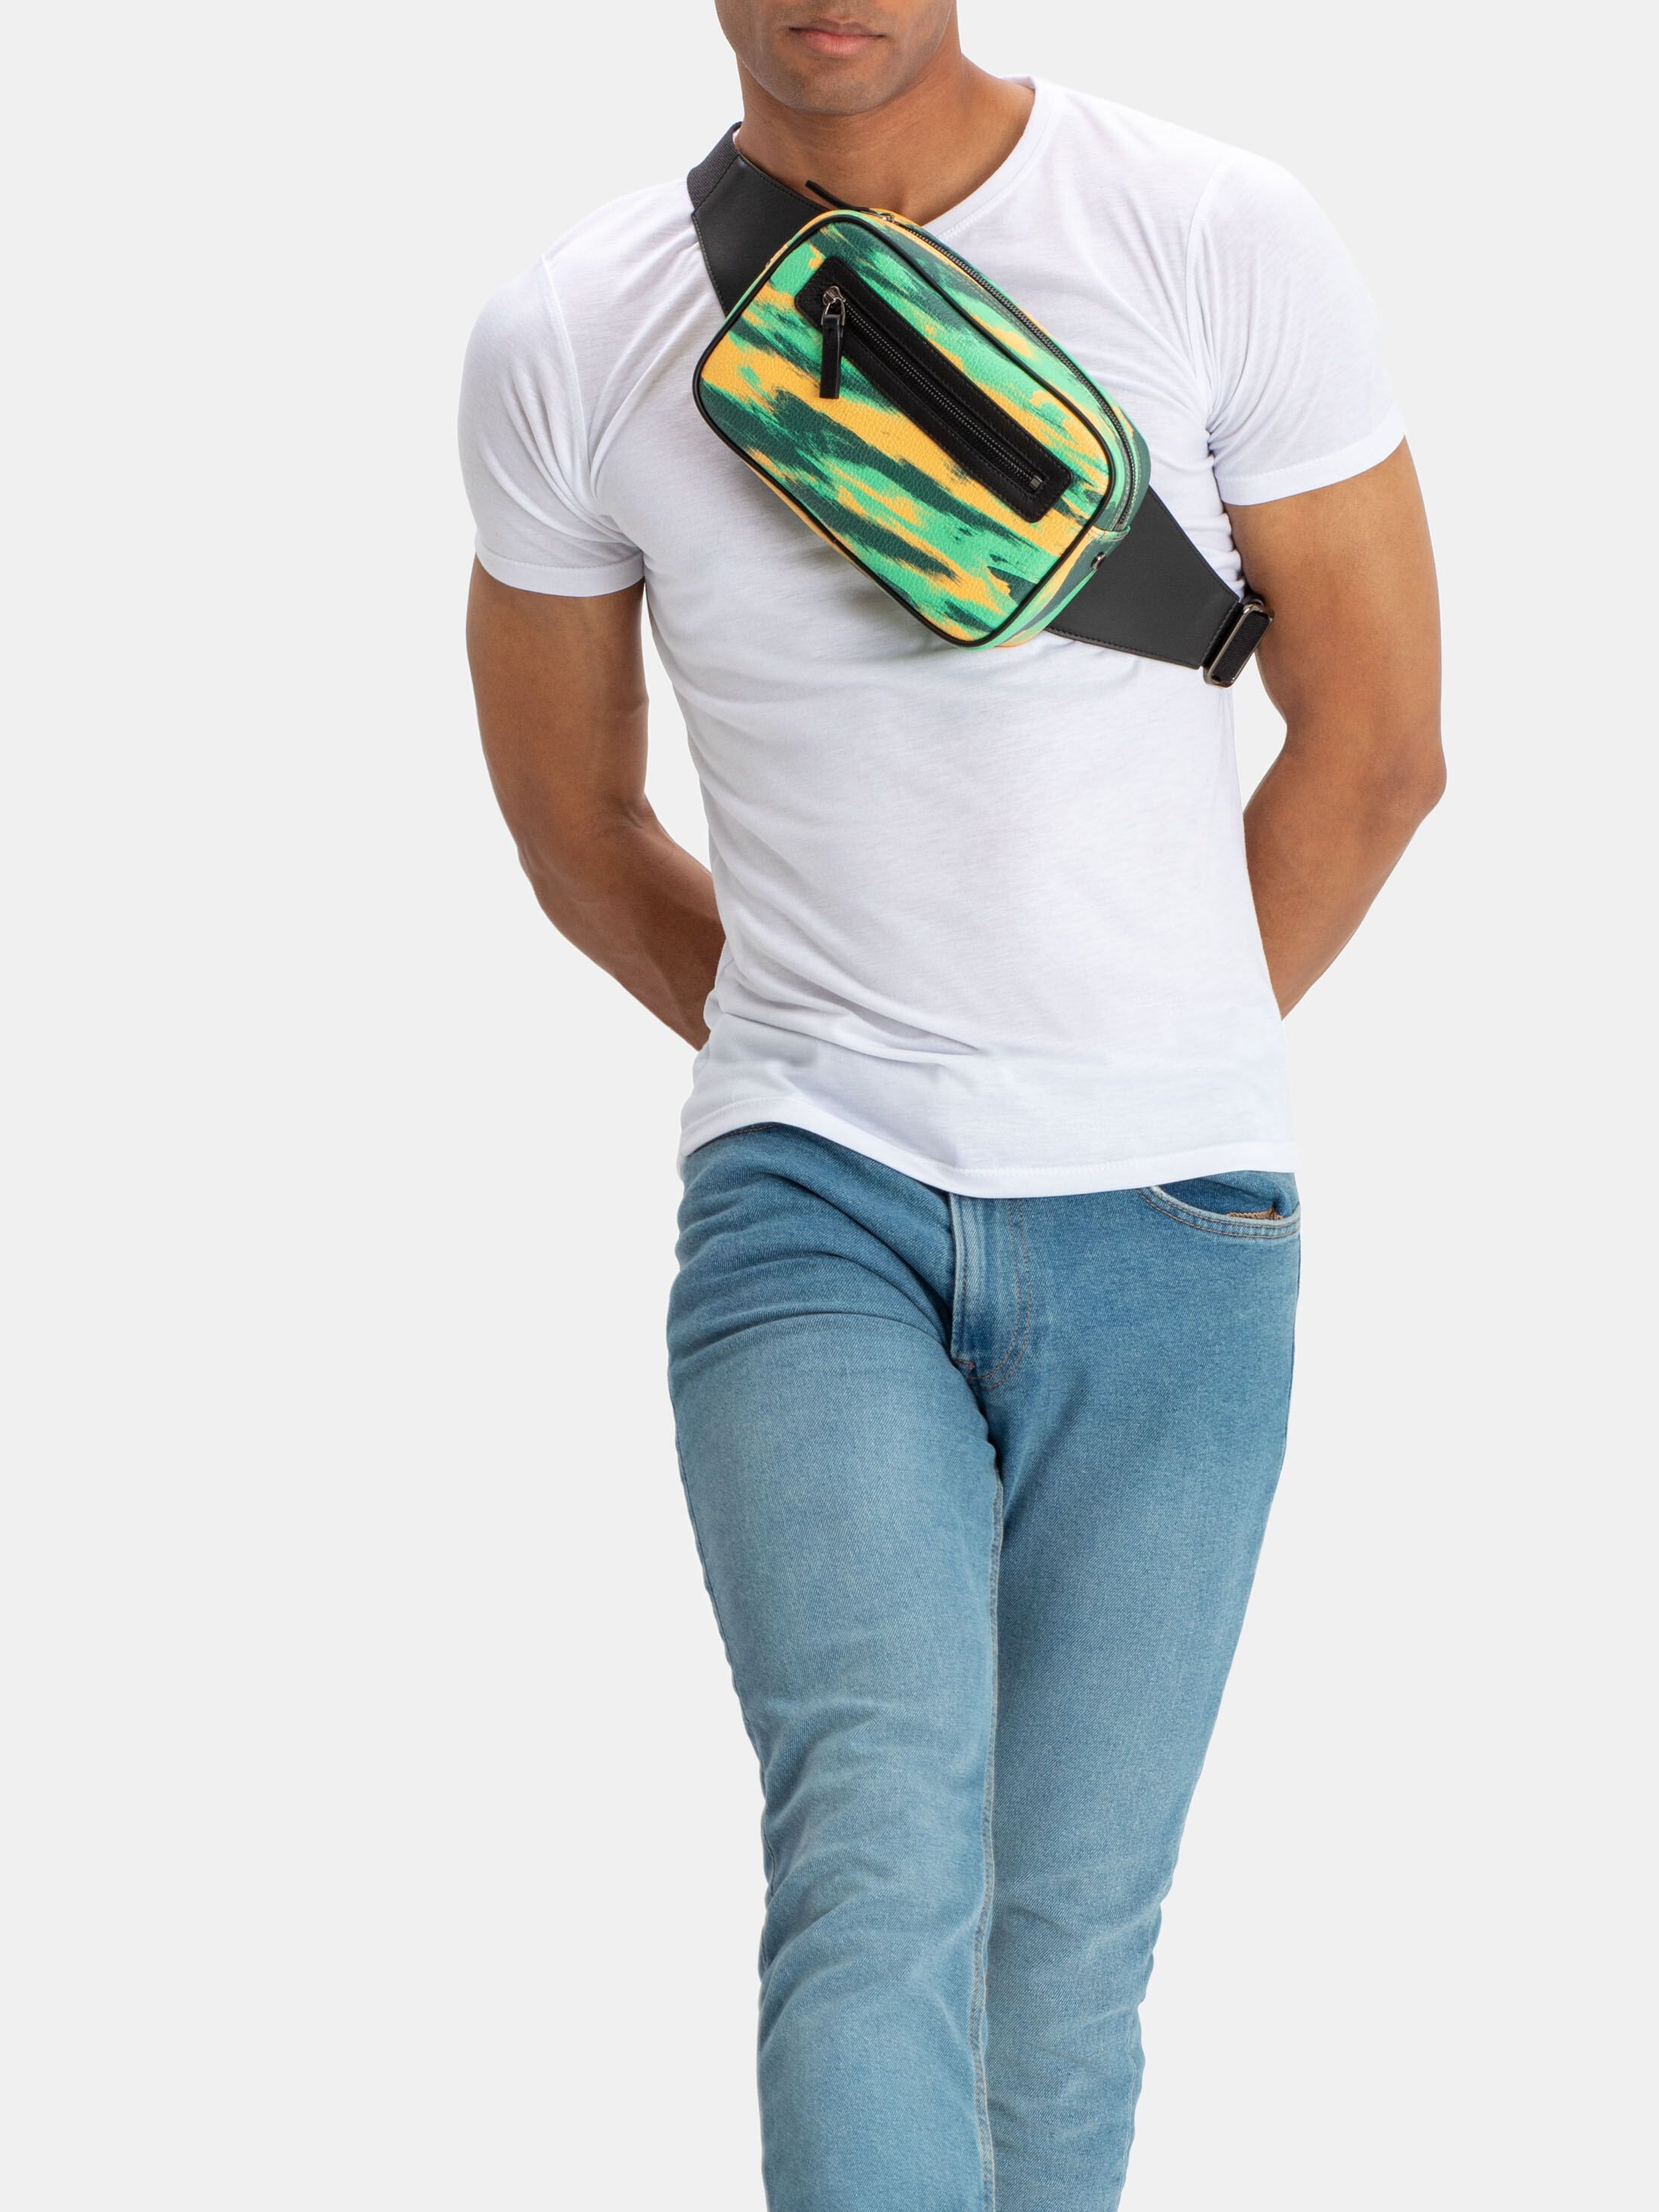 design your own bum bag zips
Sac ceinture personnalisé avec fermeture éclair